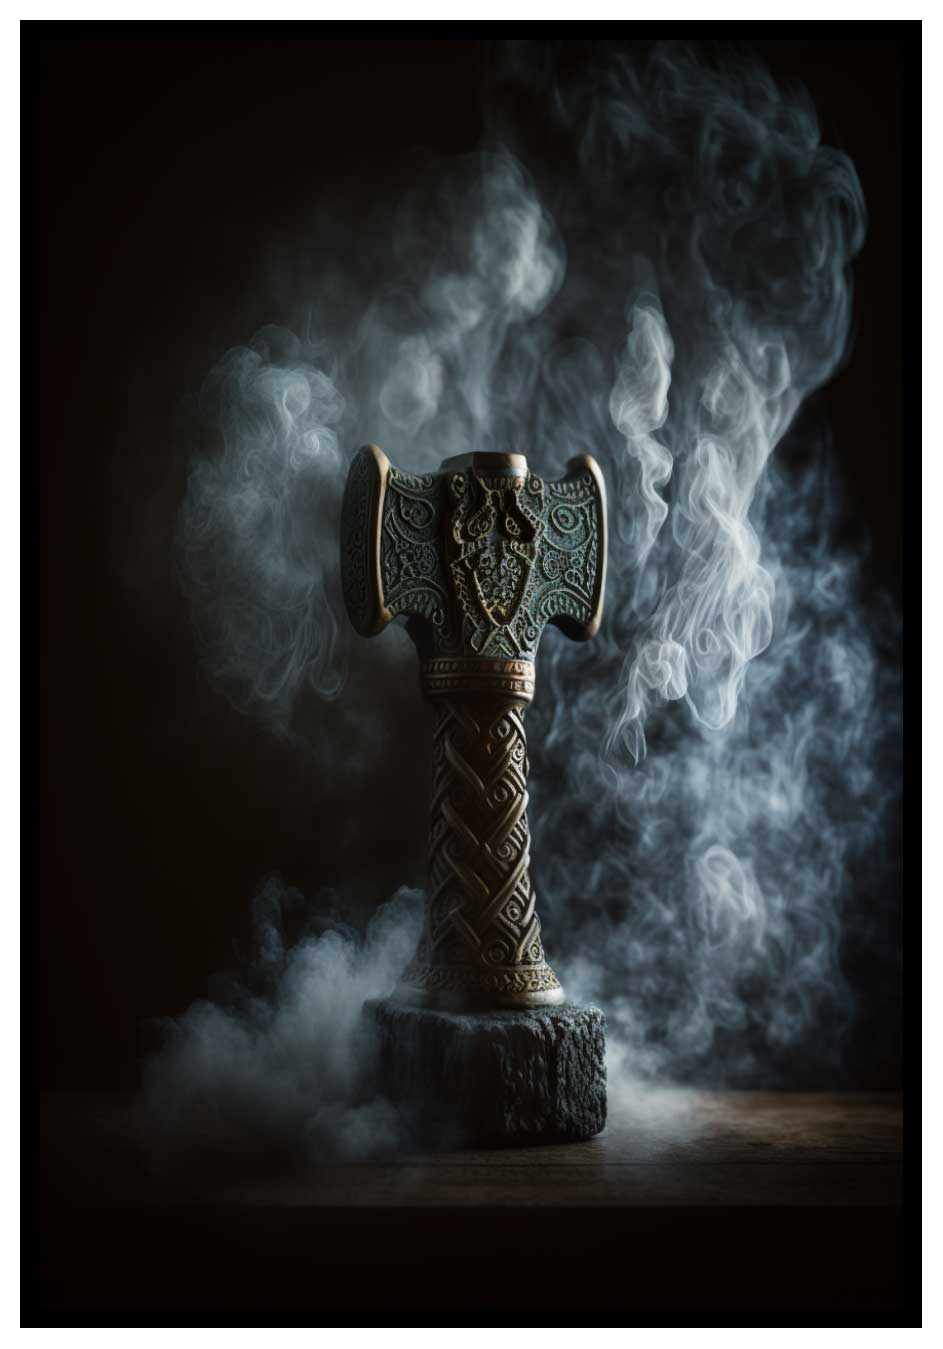 Il martello di Thor - poster in antico norreno